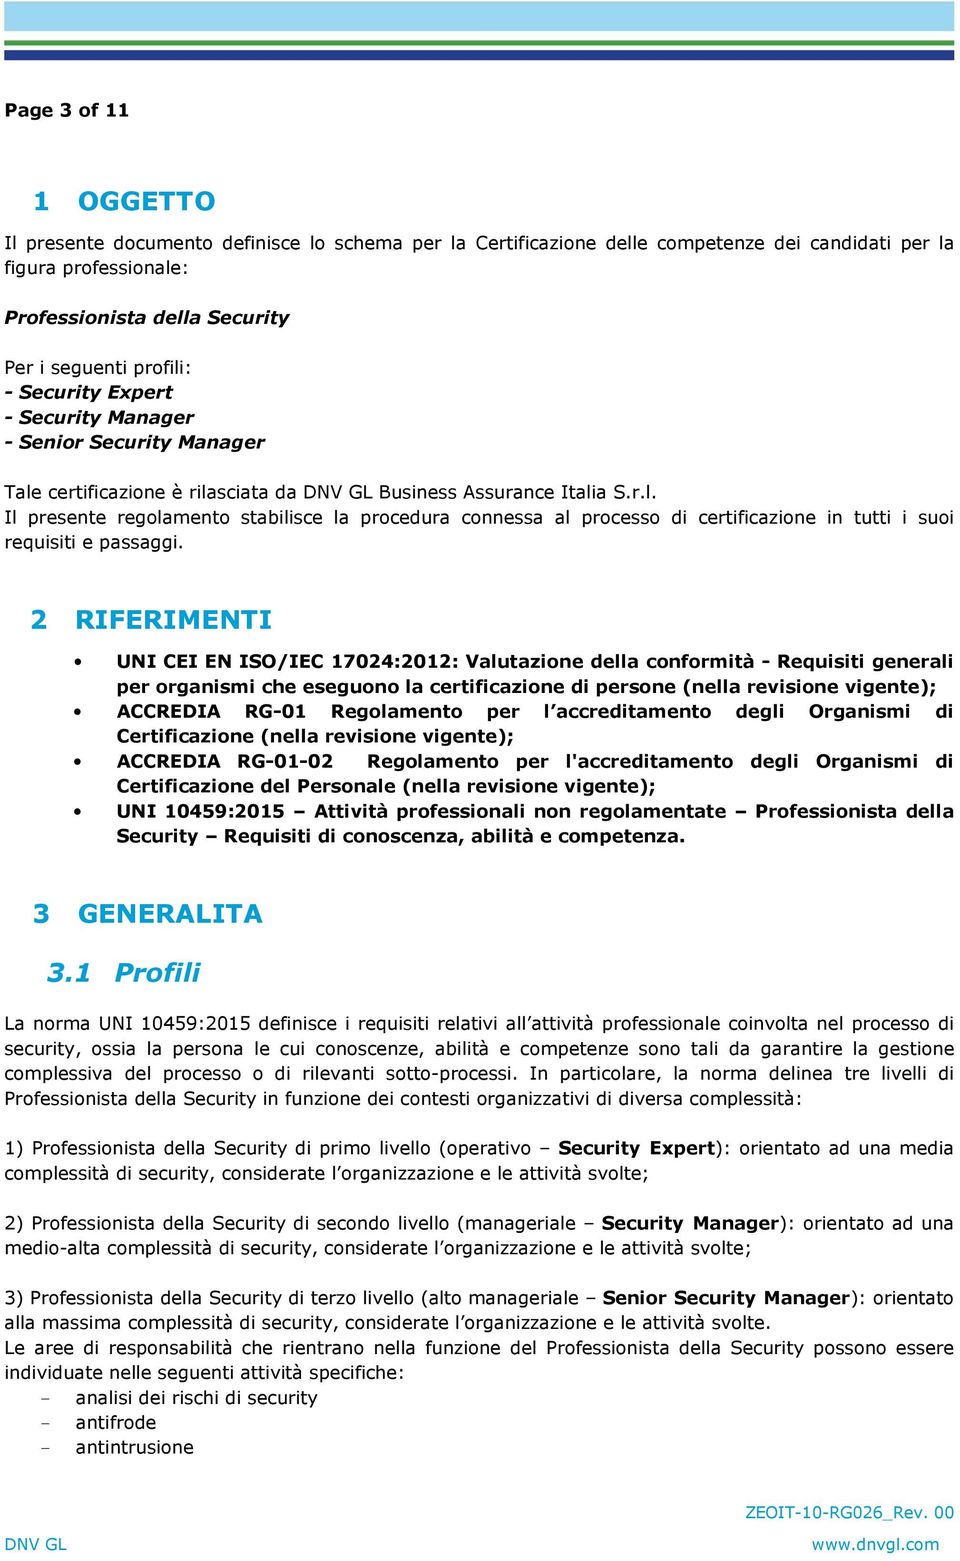 2 RIFERIMENTI UNI CEI EN ISO/IEC 17024:2012: Valutazione della conformità - Requisiti generali per organismi che eseguono la certificazione di persone (nella revisione vigente); ACCREDIA RG-01